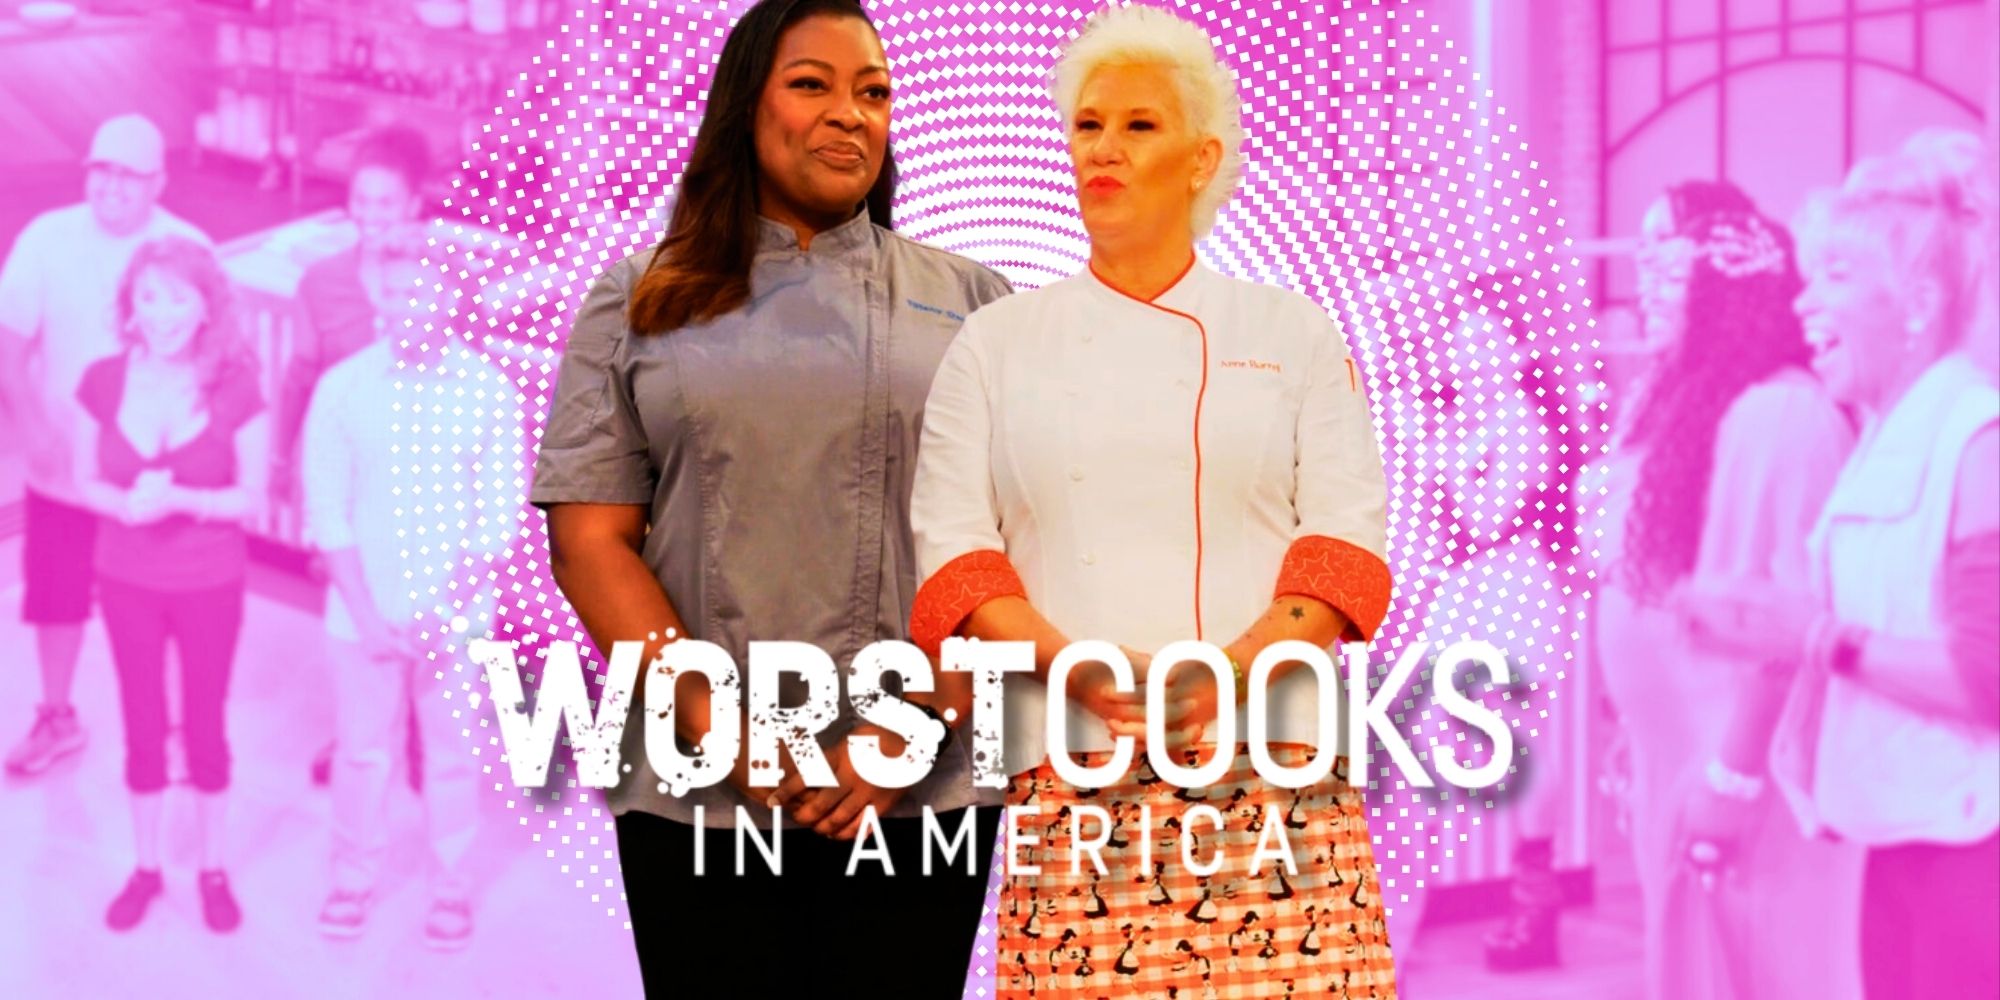 Temporada 27 de los peores cocineros de Estados Unidos: fecha de estreno, presentadores, reparto y todo lo que sabemos